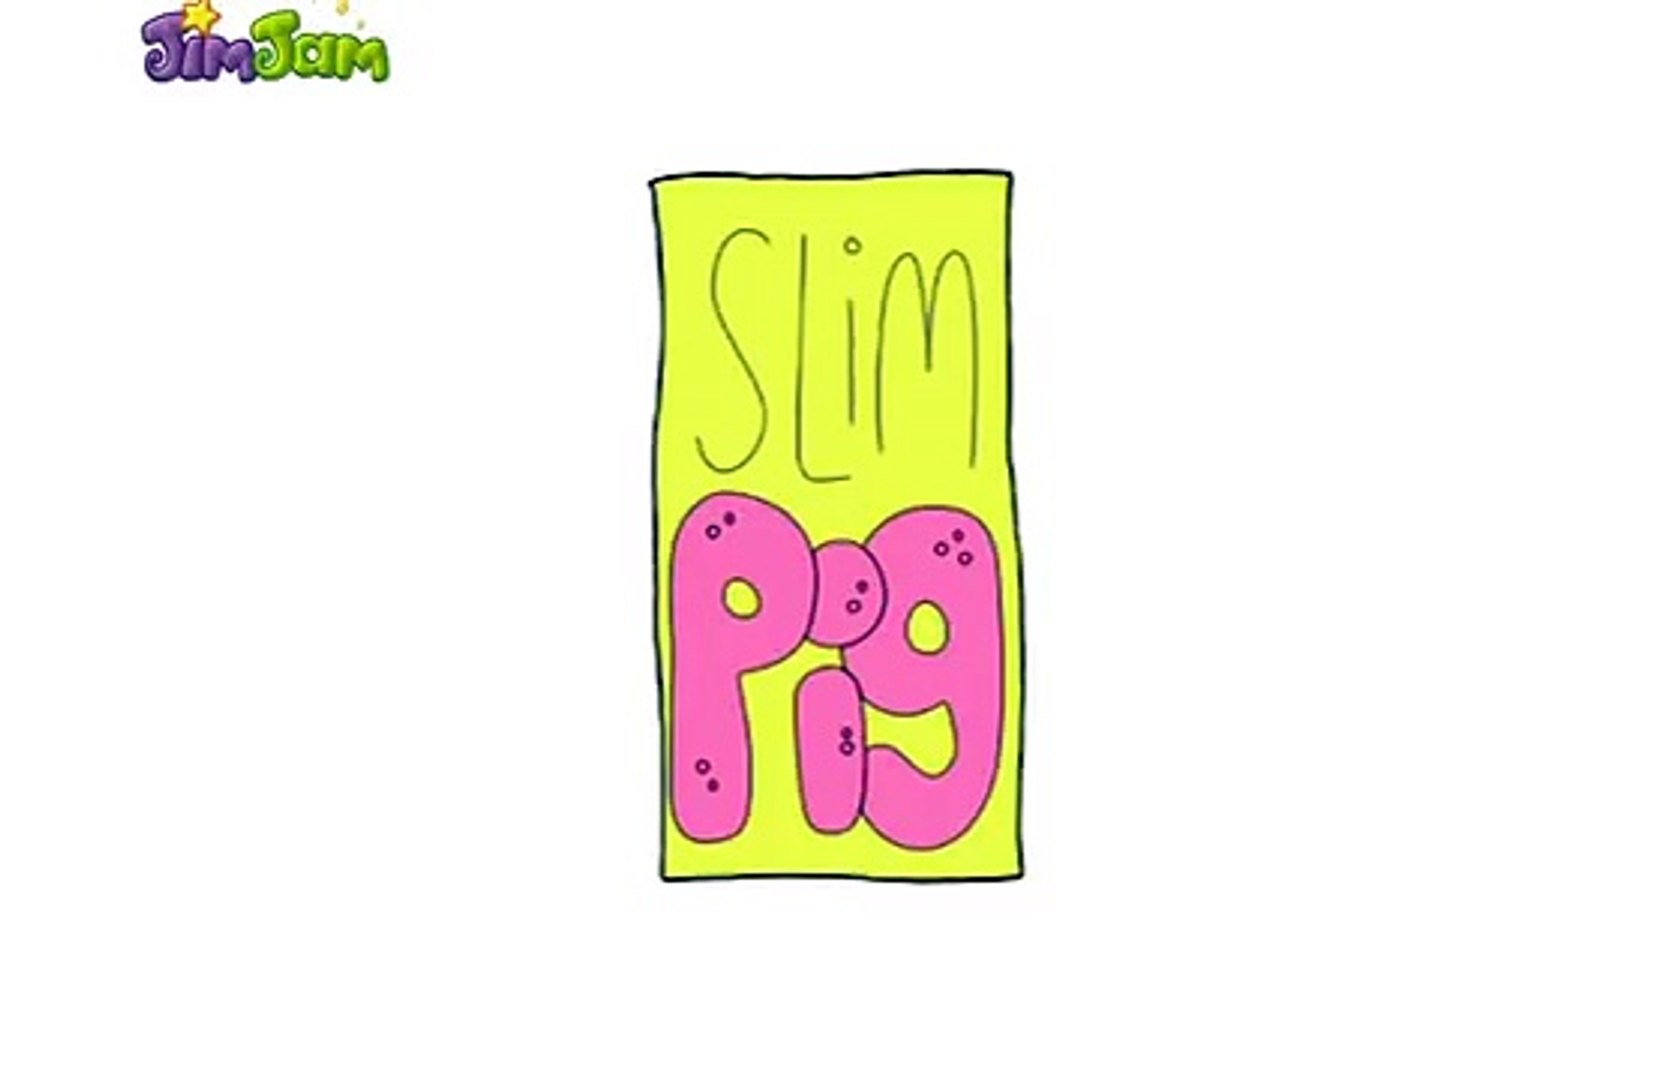 Prasátko Slim (Slim pig ) CZ znělka - video Dailymotion